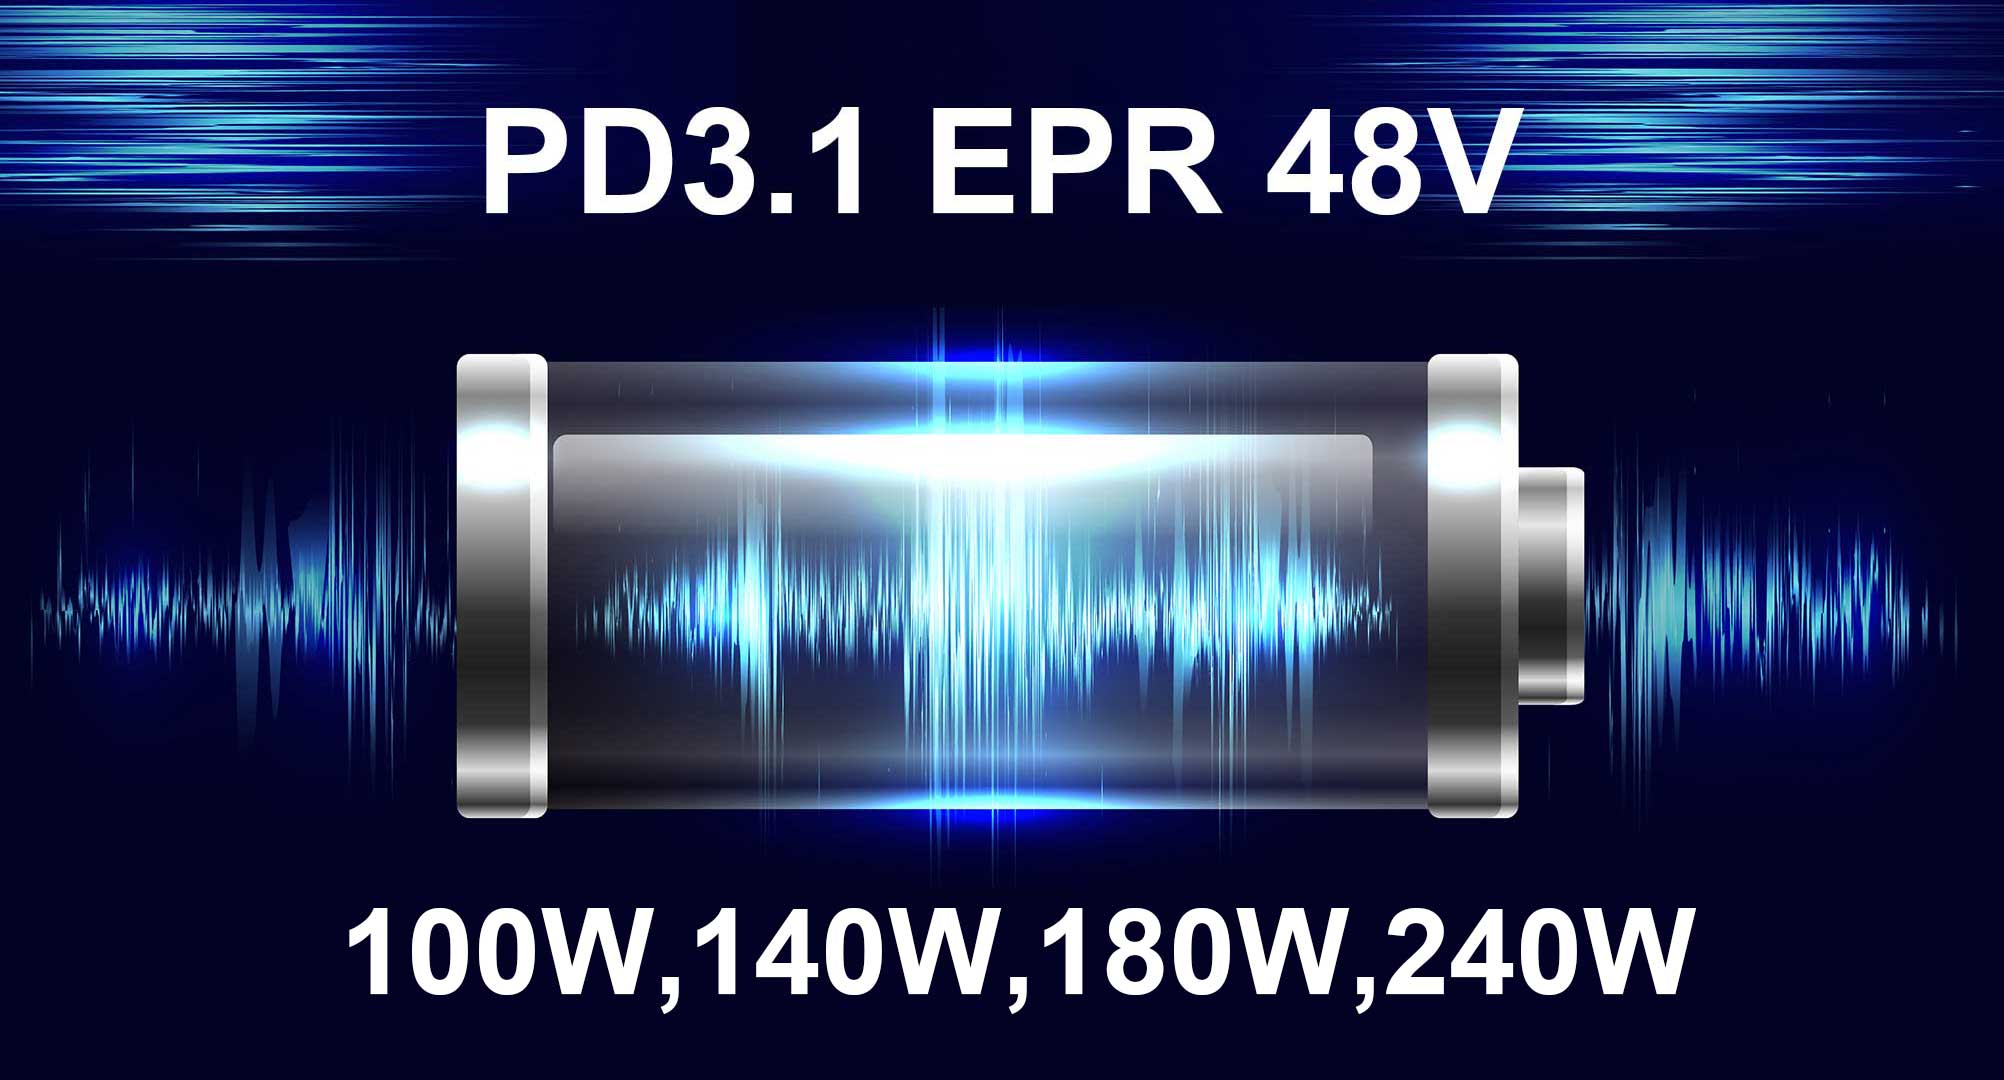 LVSUN lanza la nueva serie de productos PD3.1 EPR 48V, llevando la industria de la carga a una nueva era